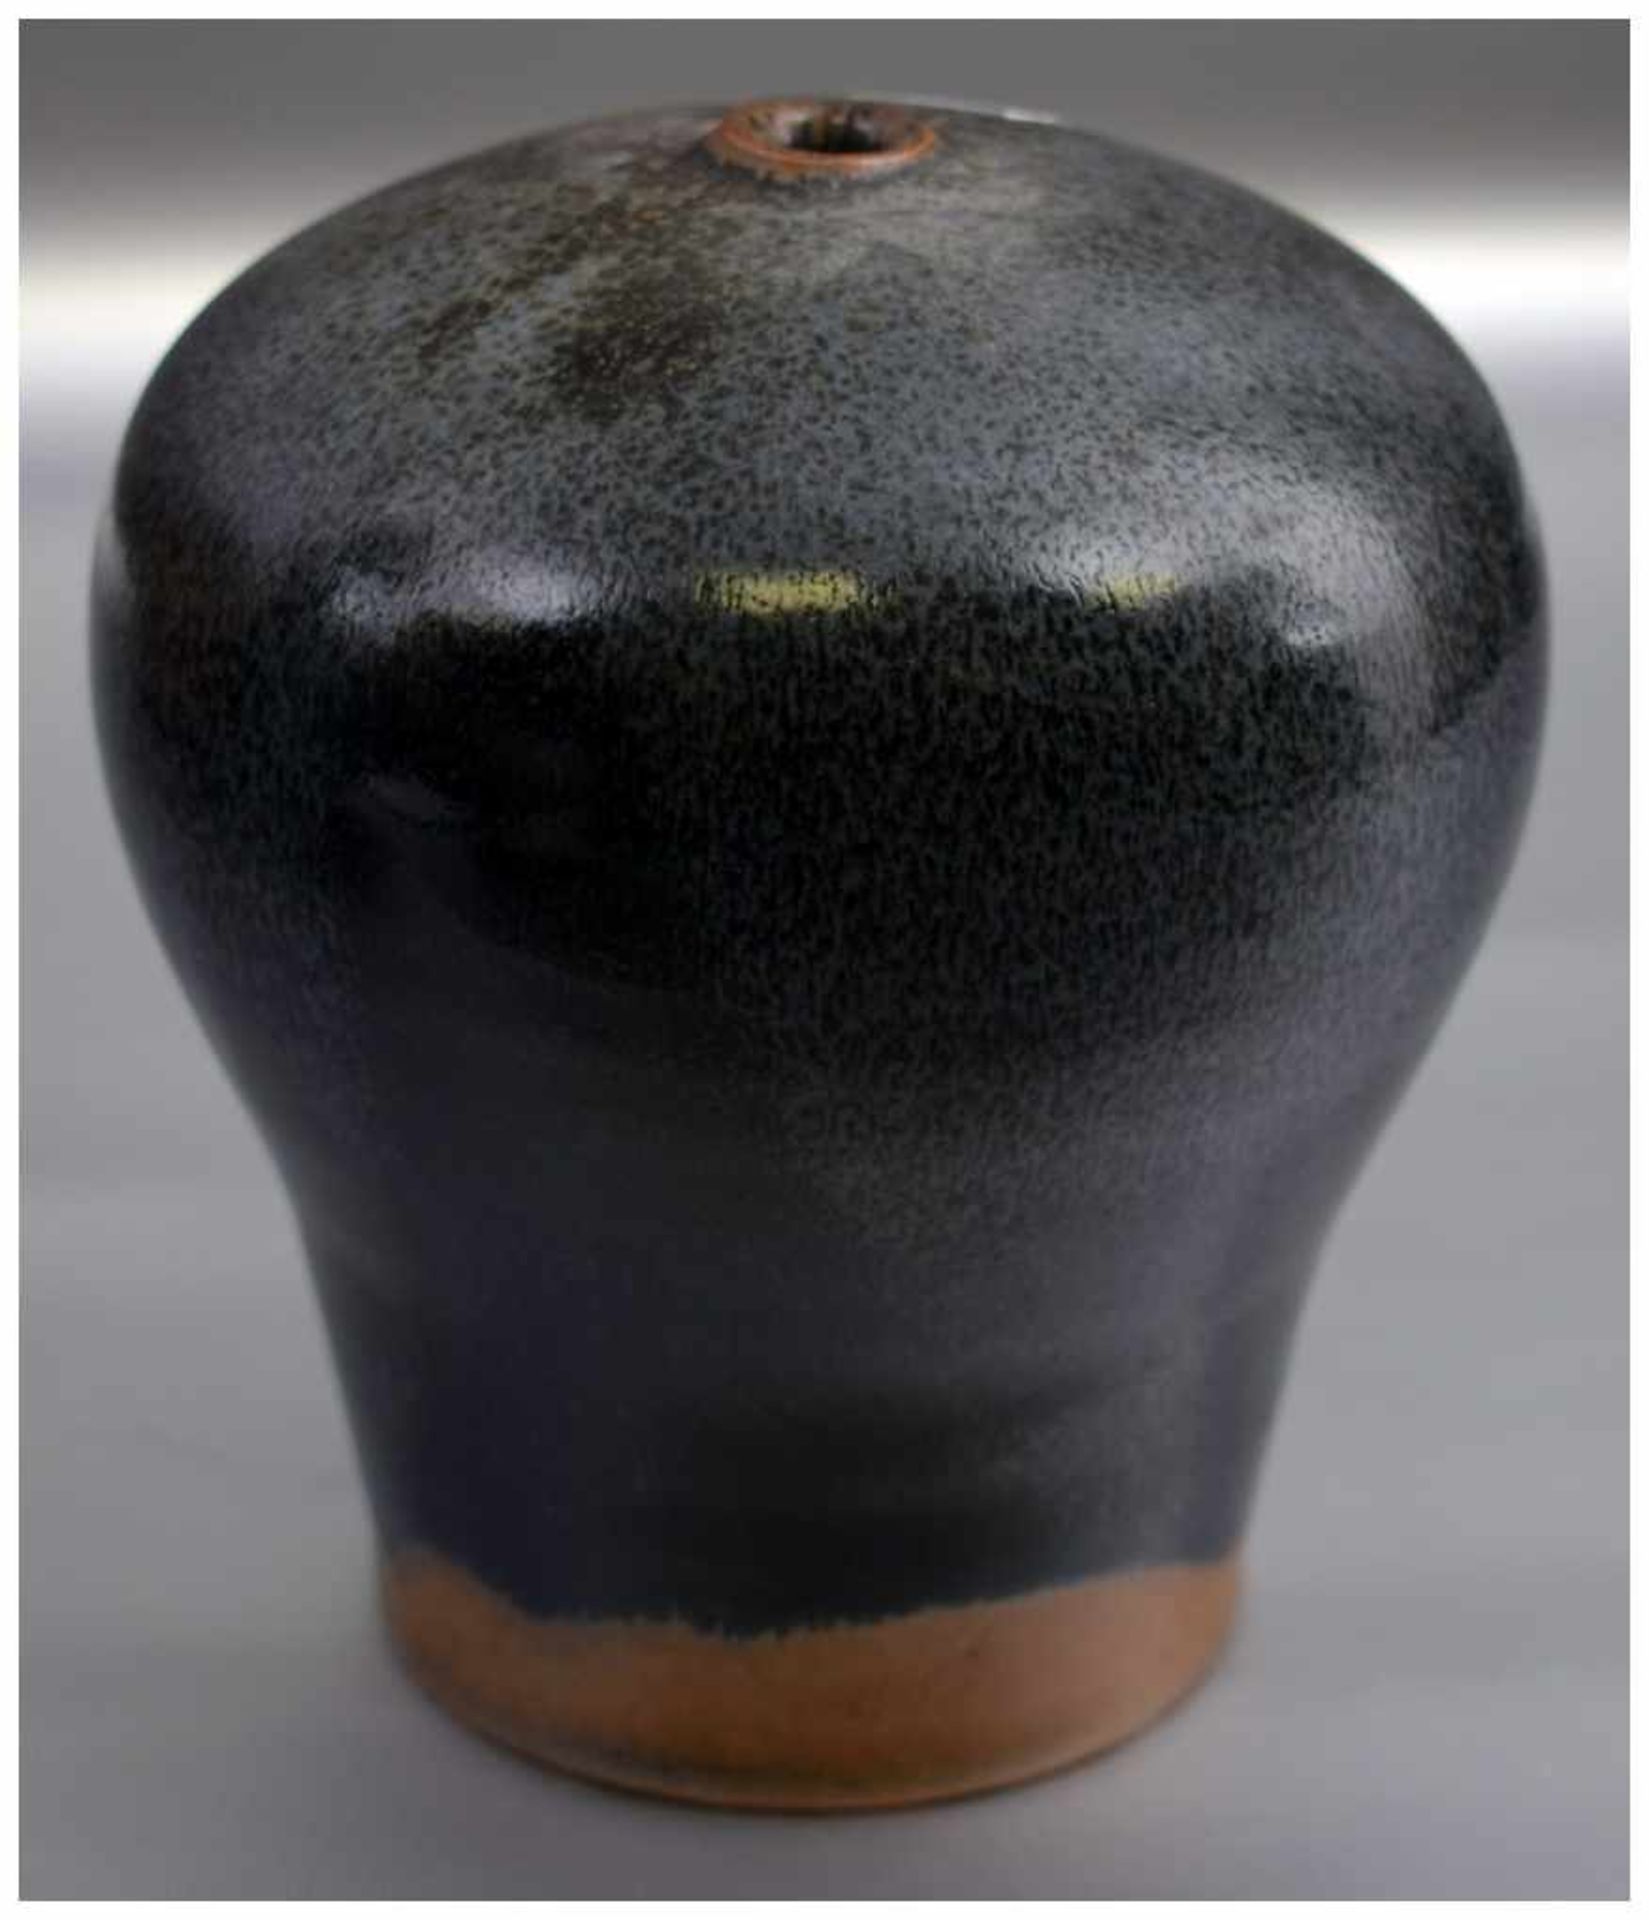 Vase beigefarbener Ton, schwarz/braun glasiert, leicht gebaucht, H 12 cm